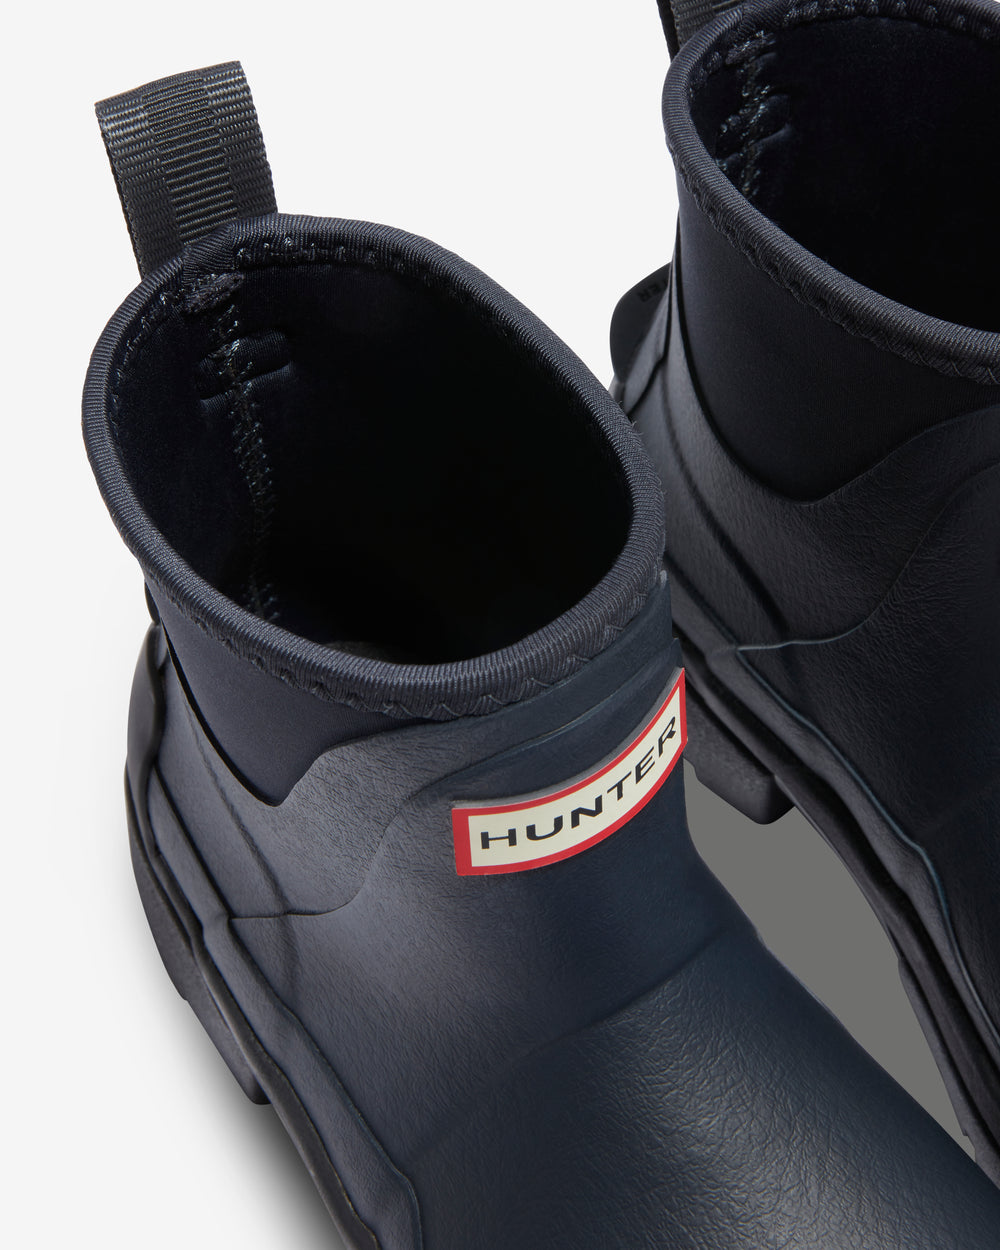 Women's Balmoral Chelsea Neoprene Hybrid Boots